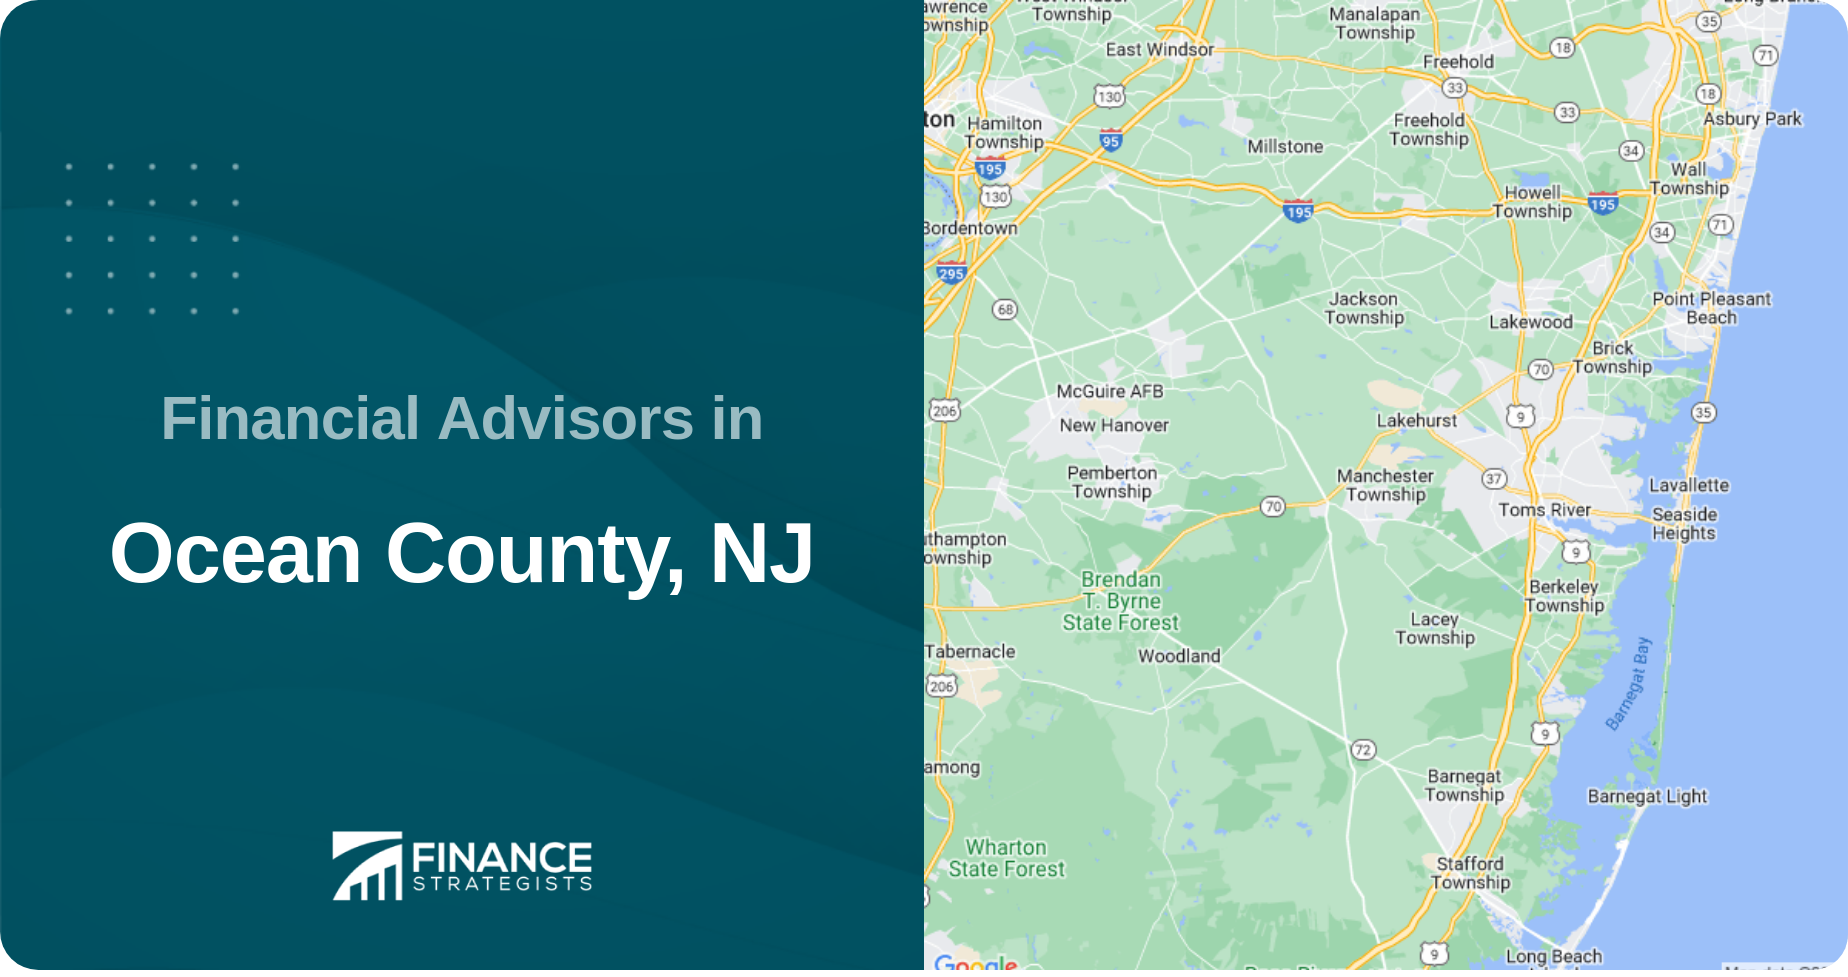 Financial Advisors in Ocean County, NJ